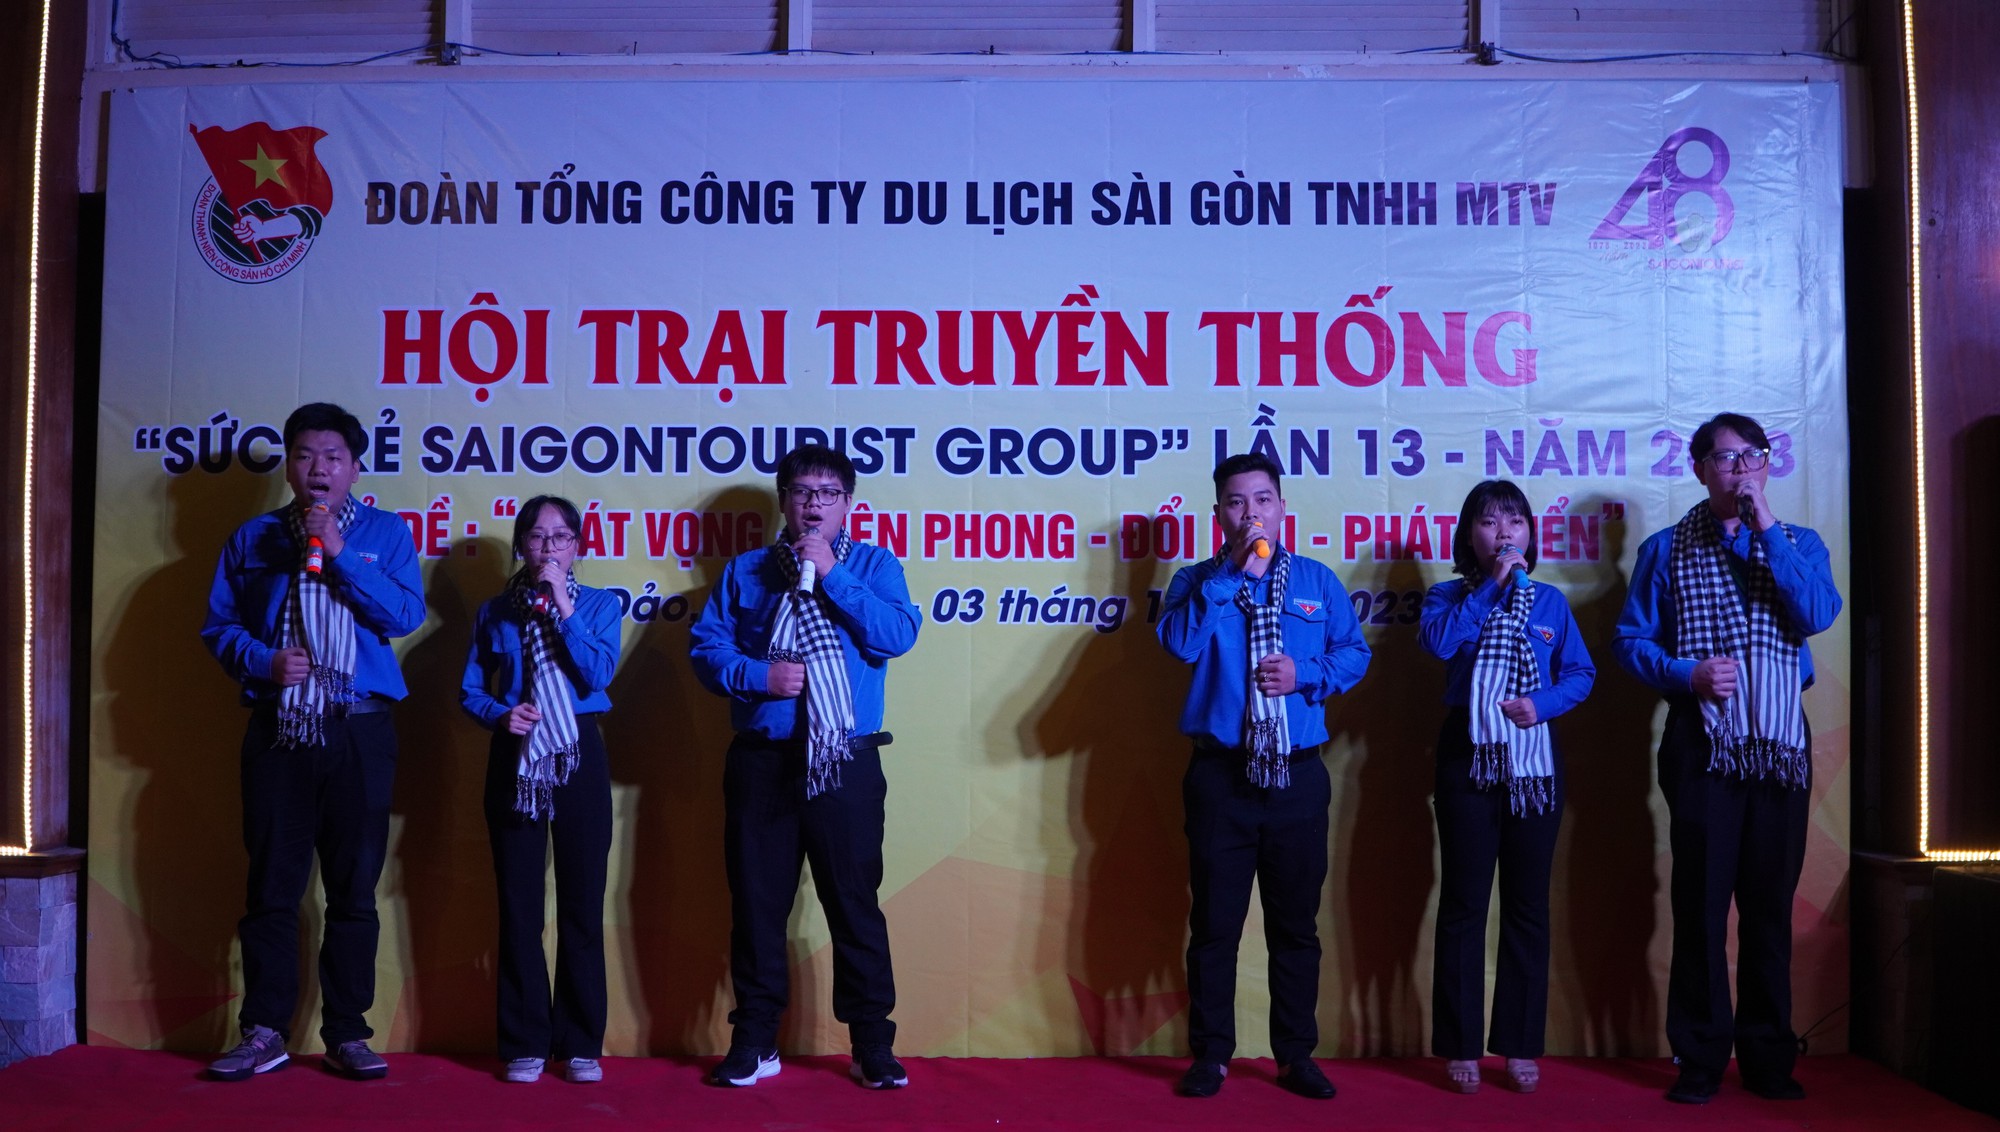 Nhiều hoạt động ý nghĩa tại đêm truyền thống Hội trại Sức trẻ Saigontourist Group - Ảnh 3.